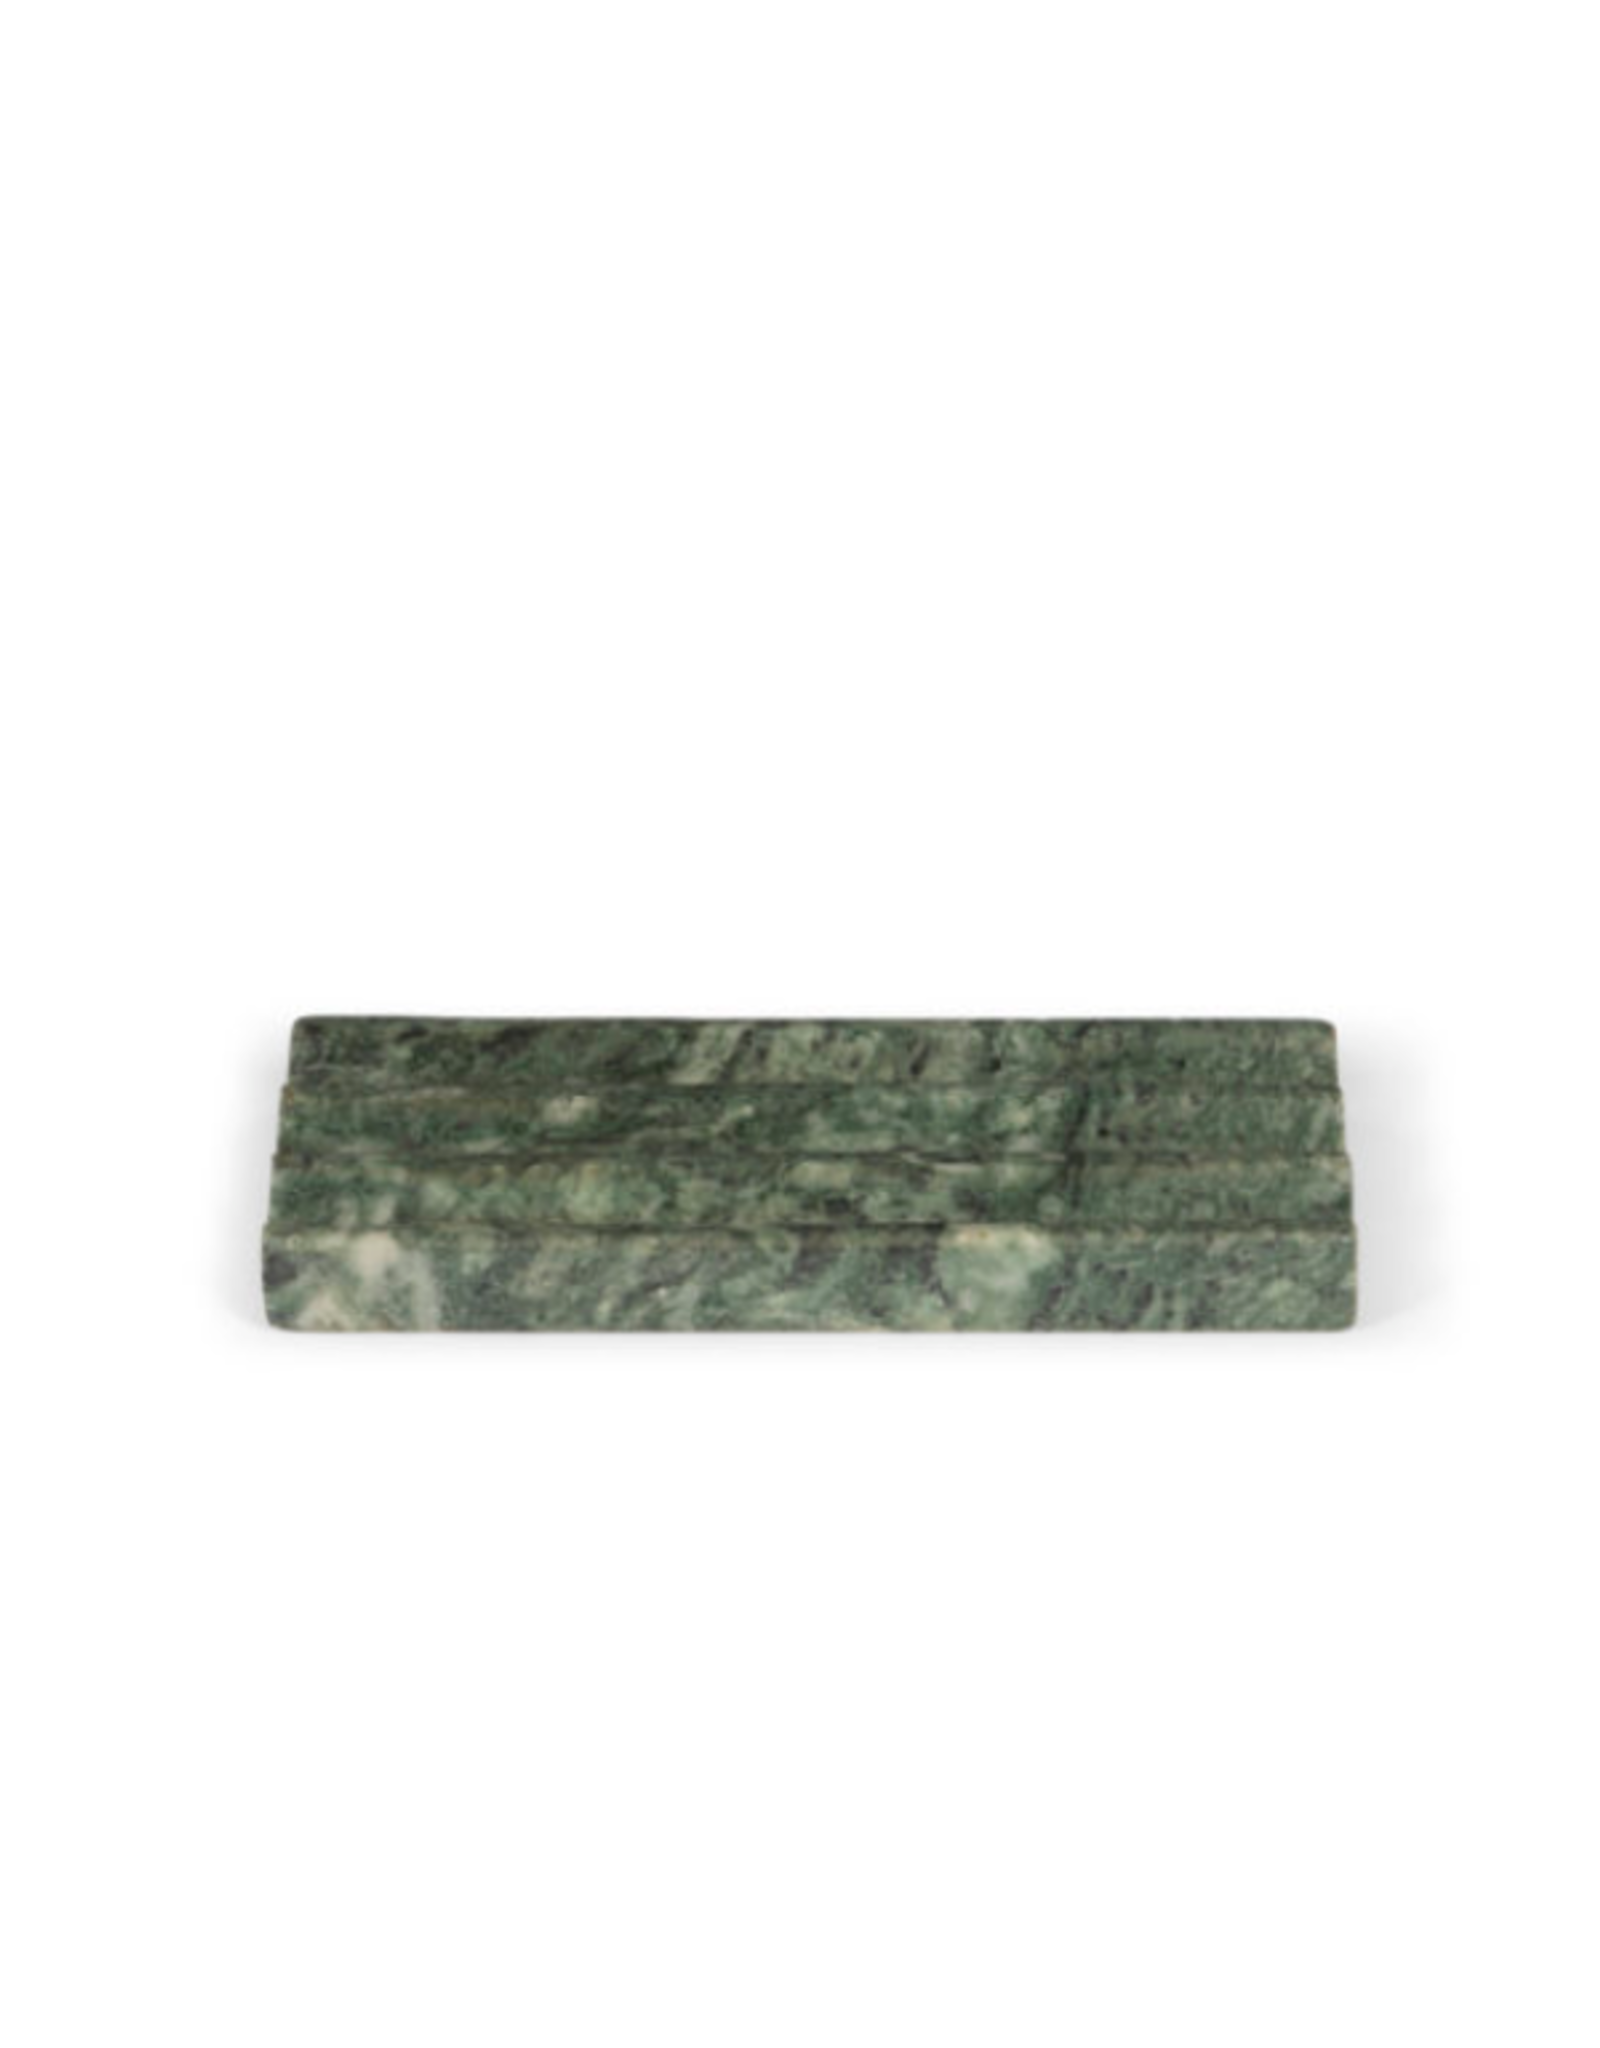 Stoned - Green Marble - Pen Board